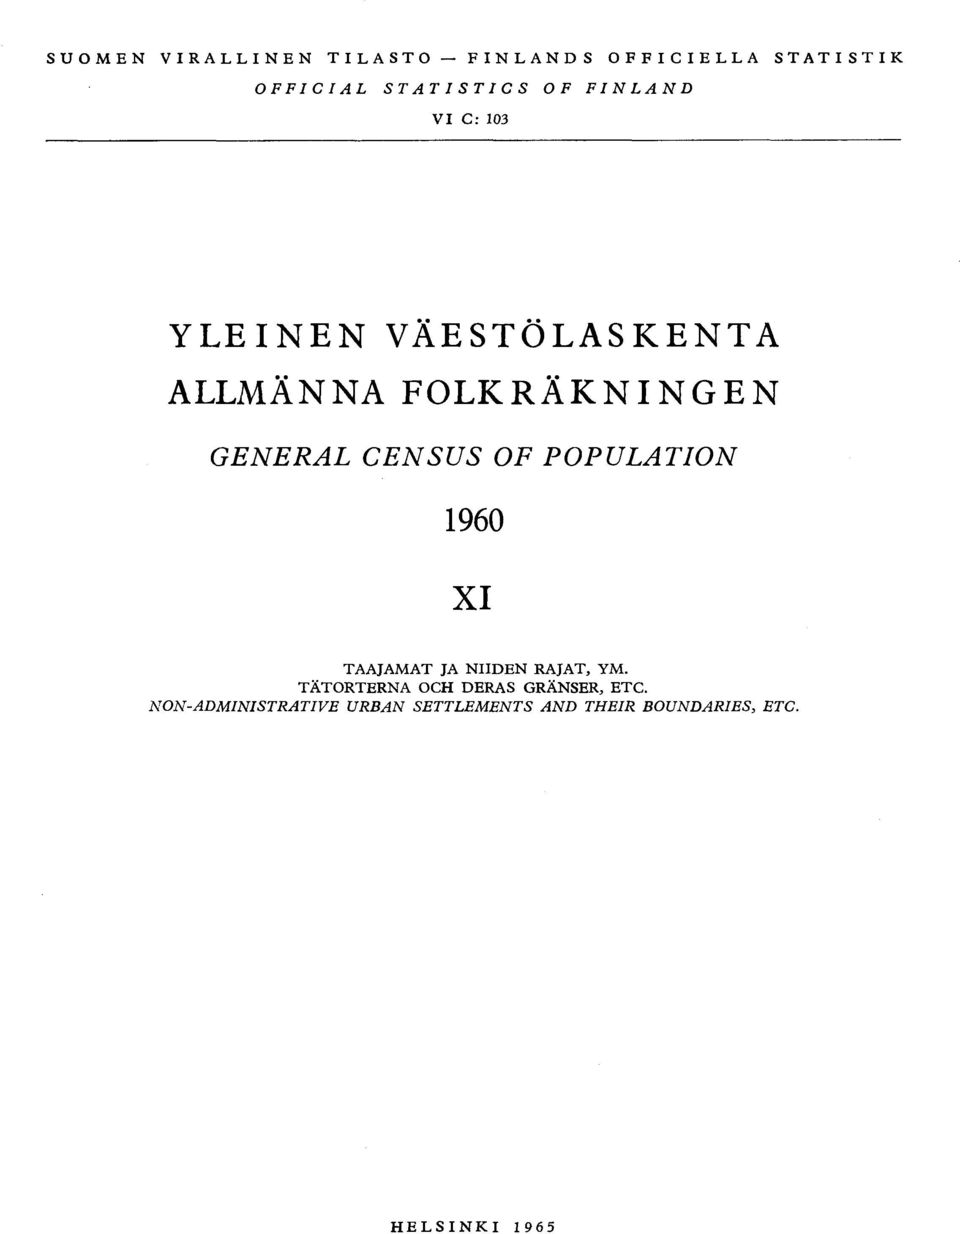 GENERAL CENSUS OF POPULATION 1960 XI TAAJAMAT JA NIIDEN RAJAT, YM, TÄTORTERNA OCH